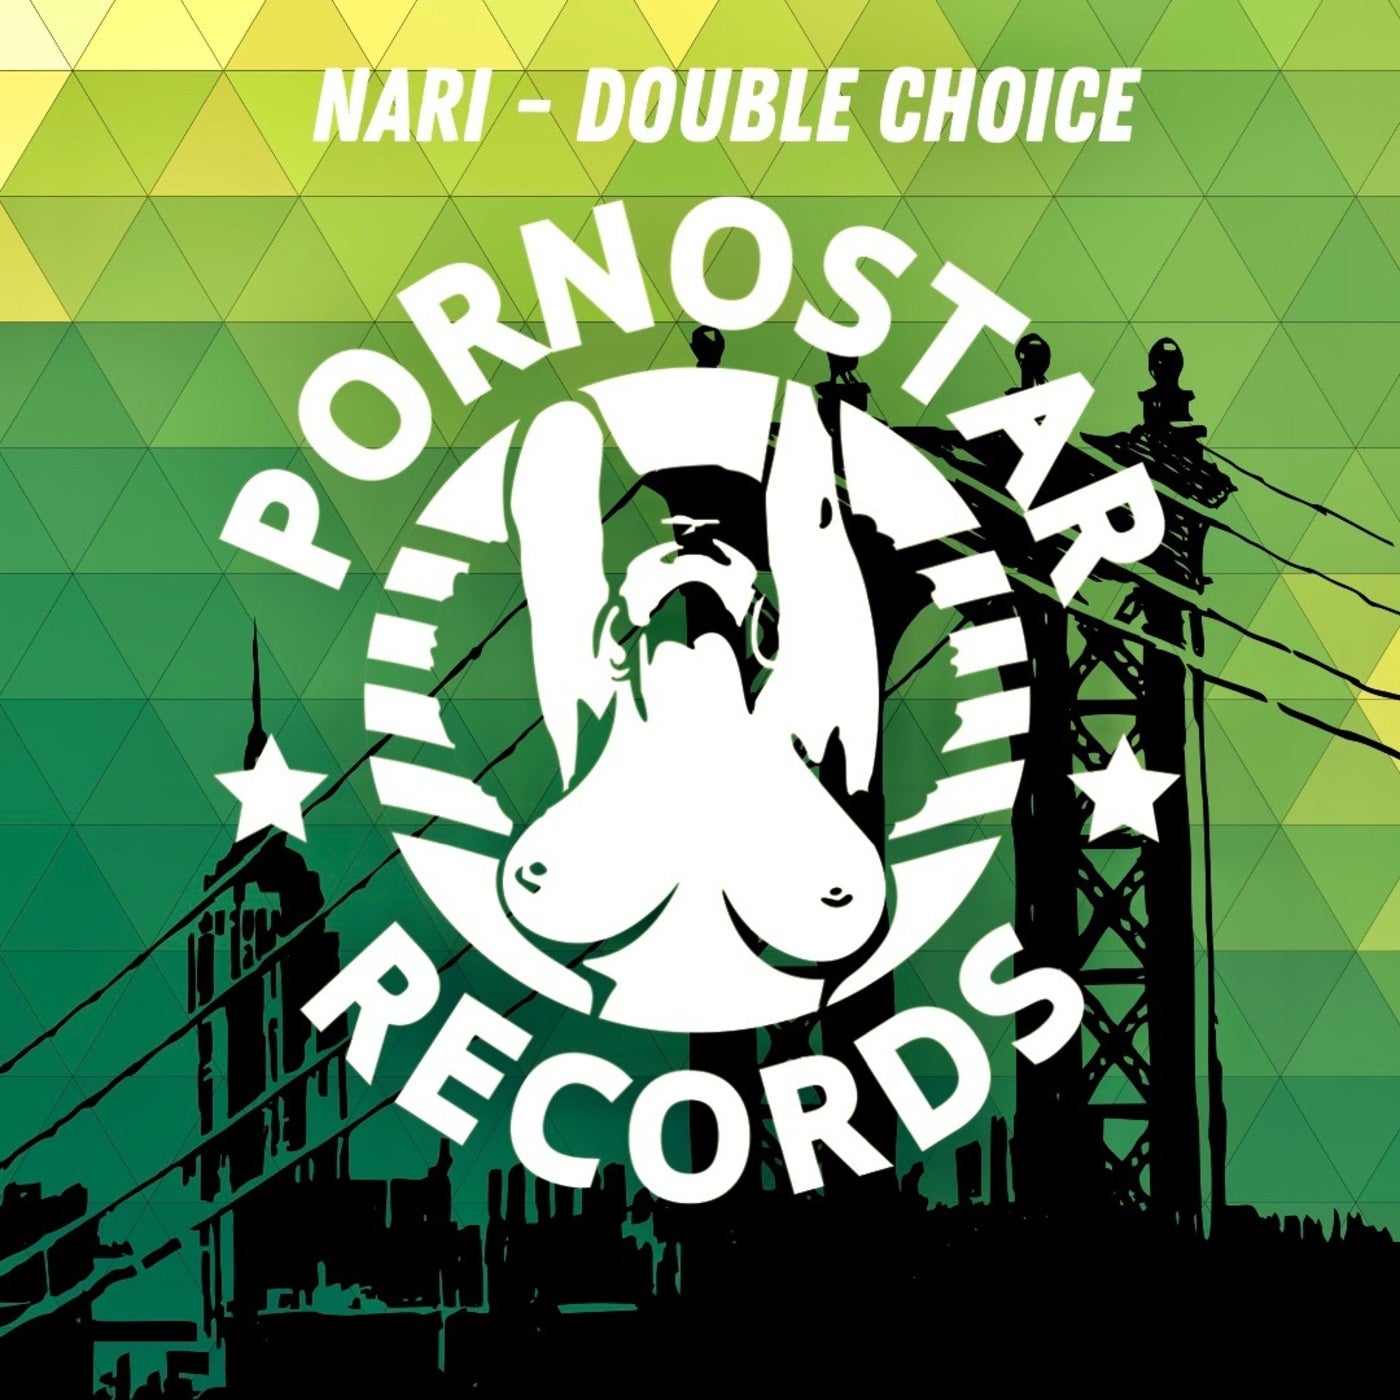 Nari - Double Choice (Original Mix)